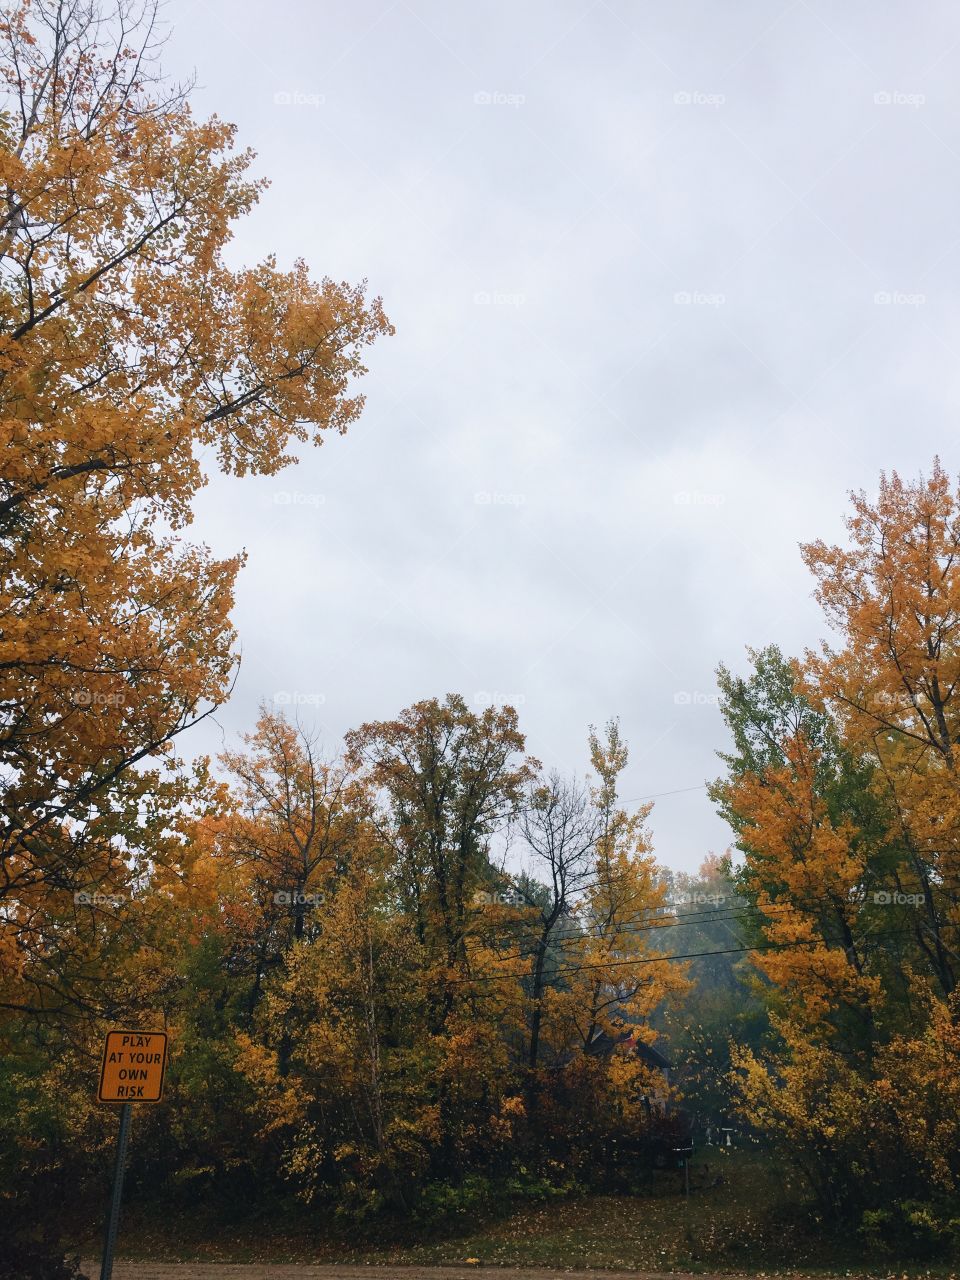 Fall is the prettiest season 💞🍂🍁🌾